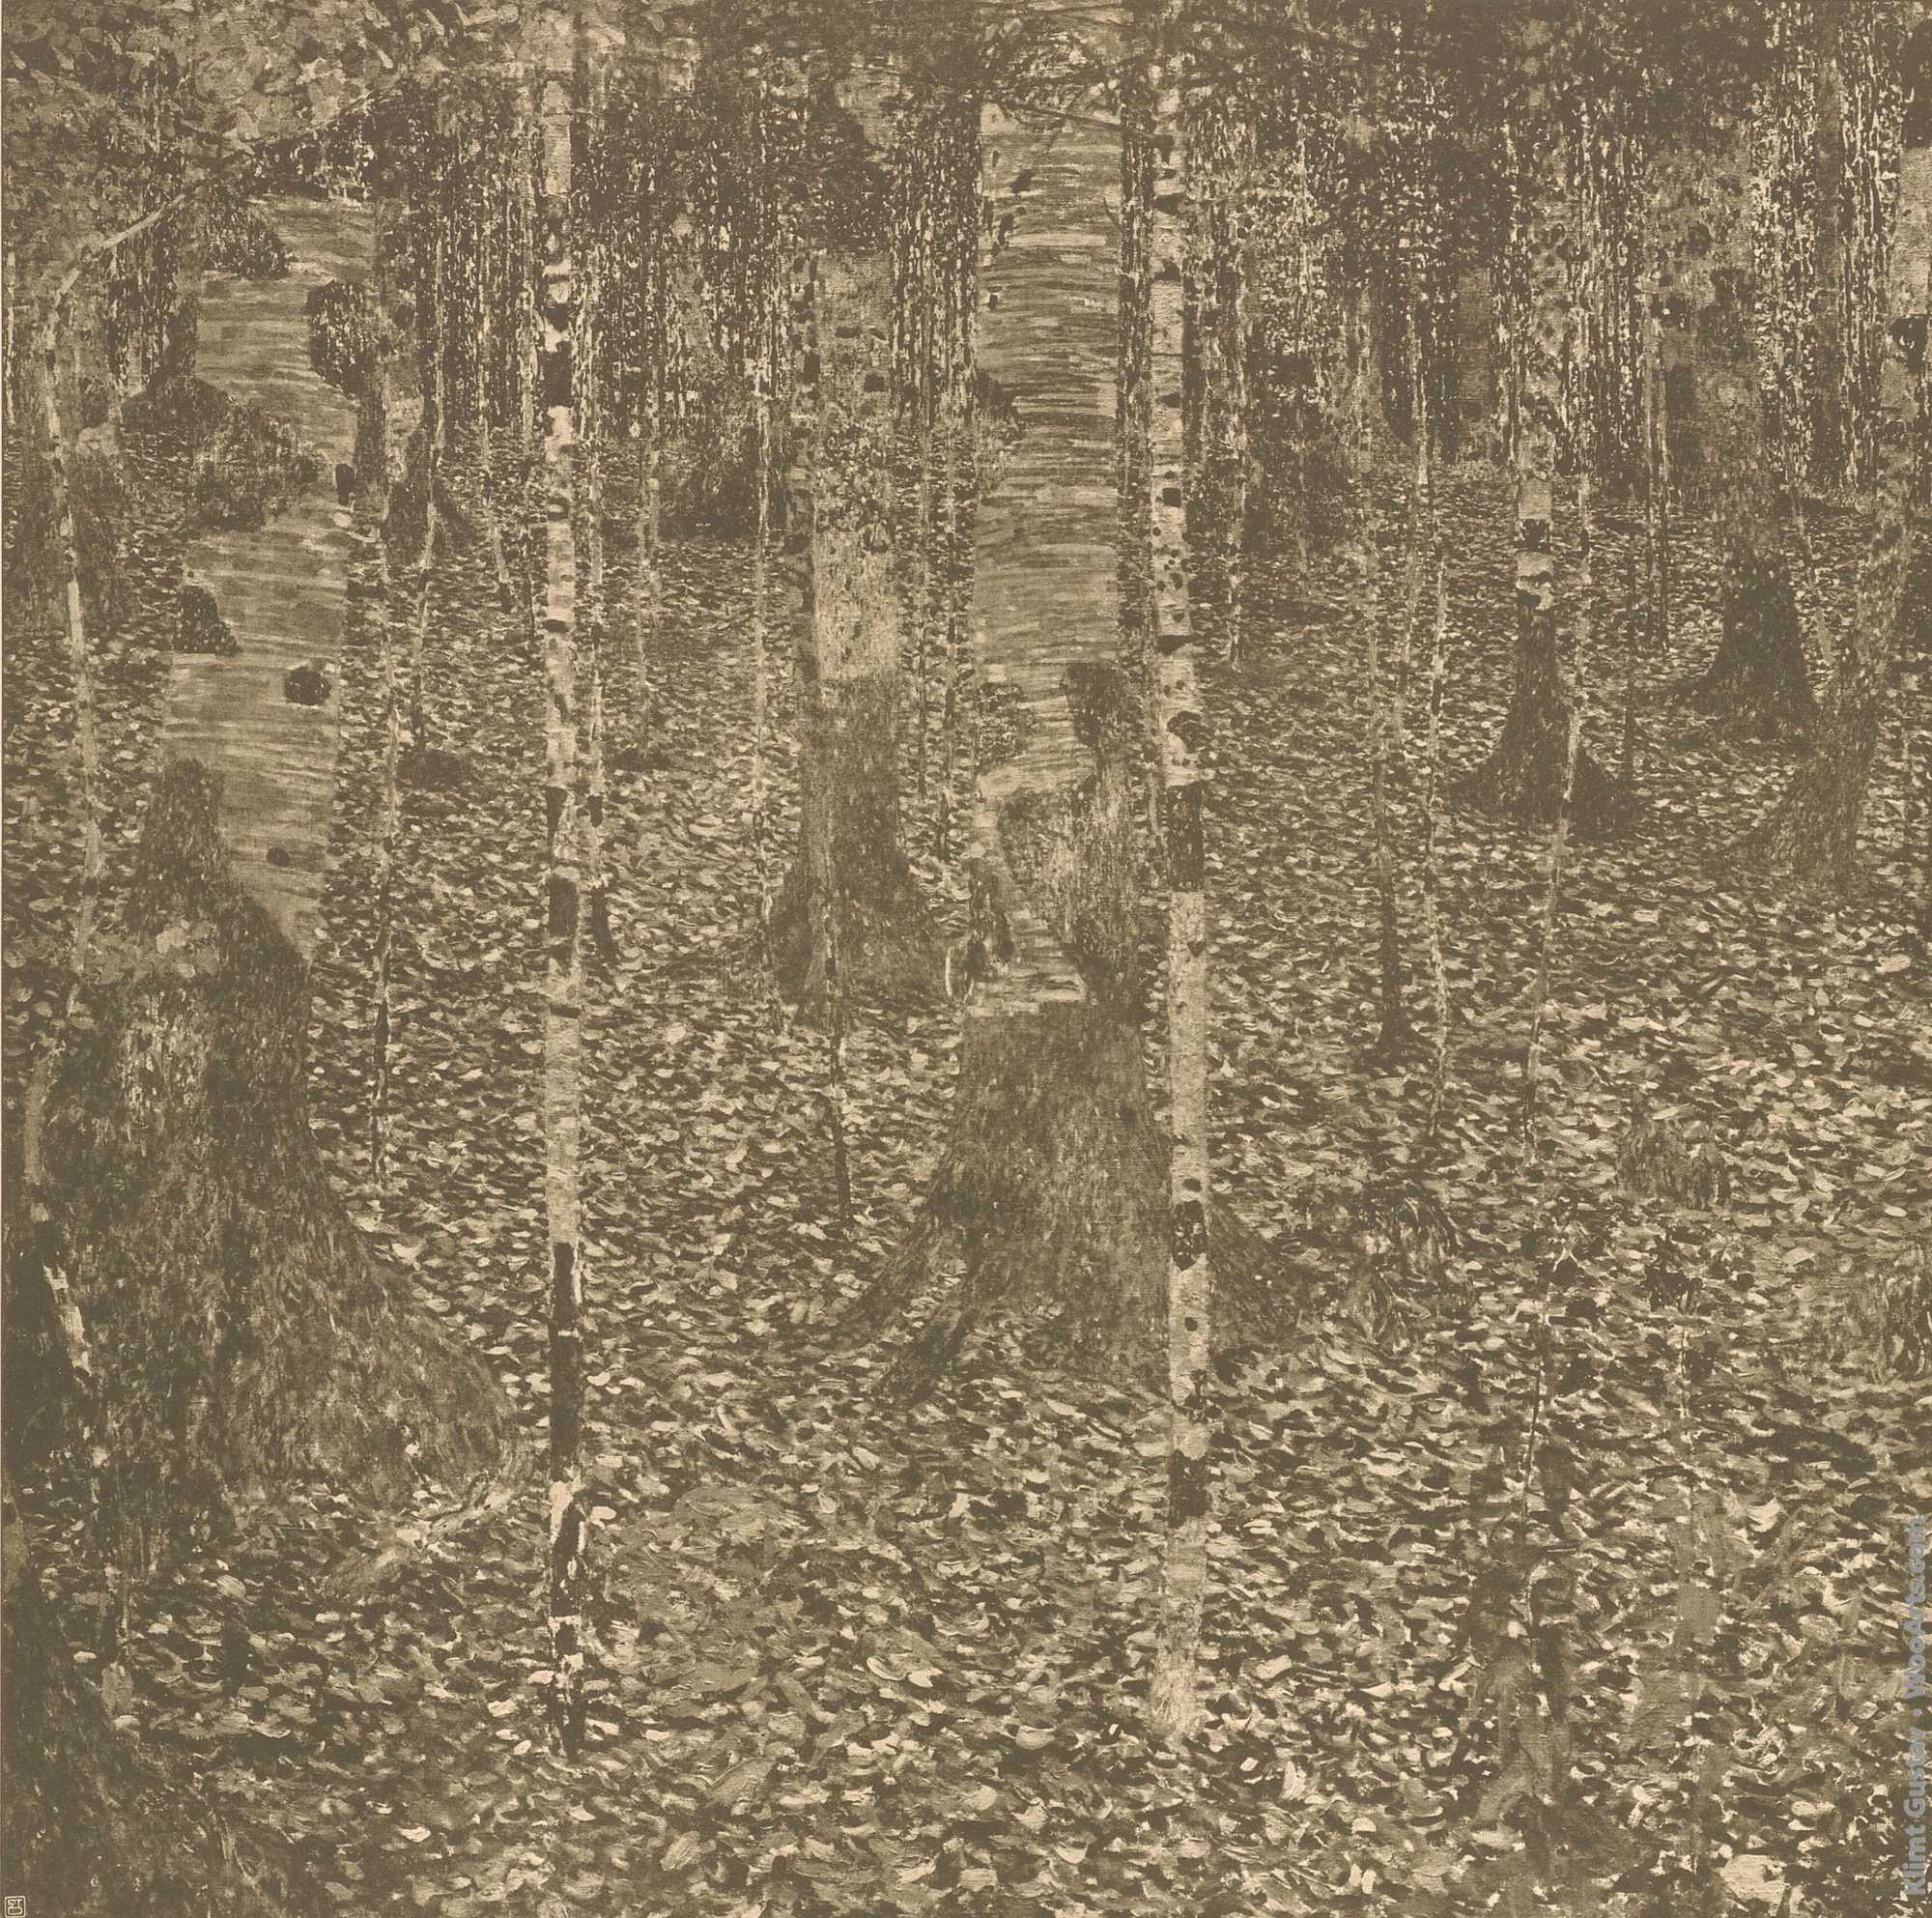 Birch forest after Gustav Klimt, plate 36, The work of Gustav Klimt Gustav Klimt 1918